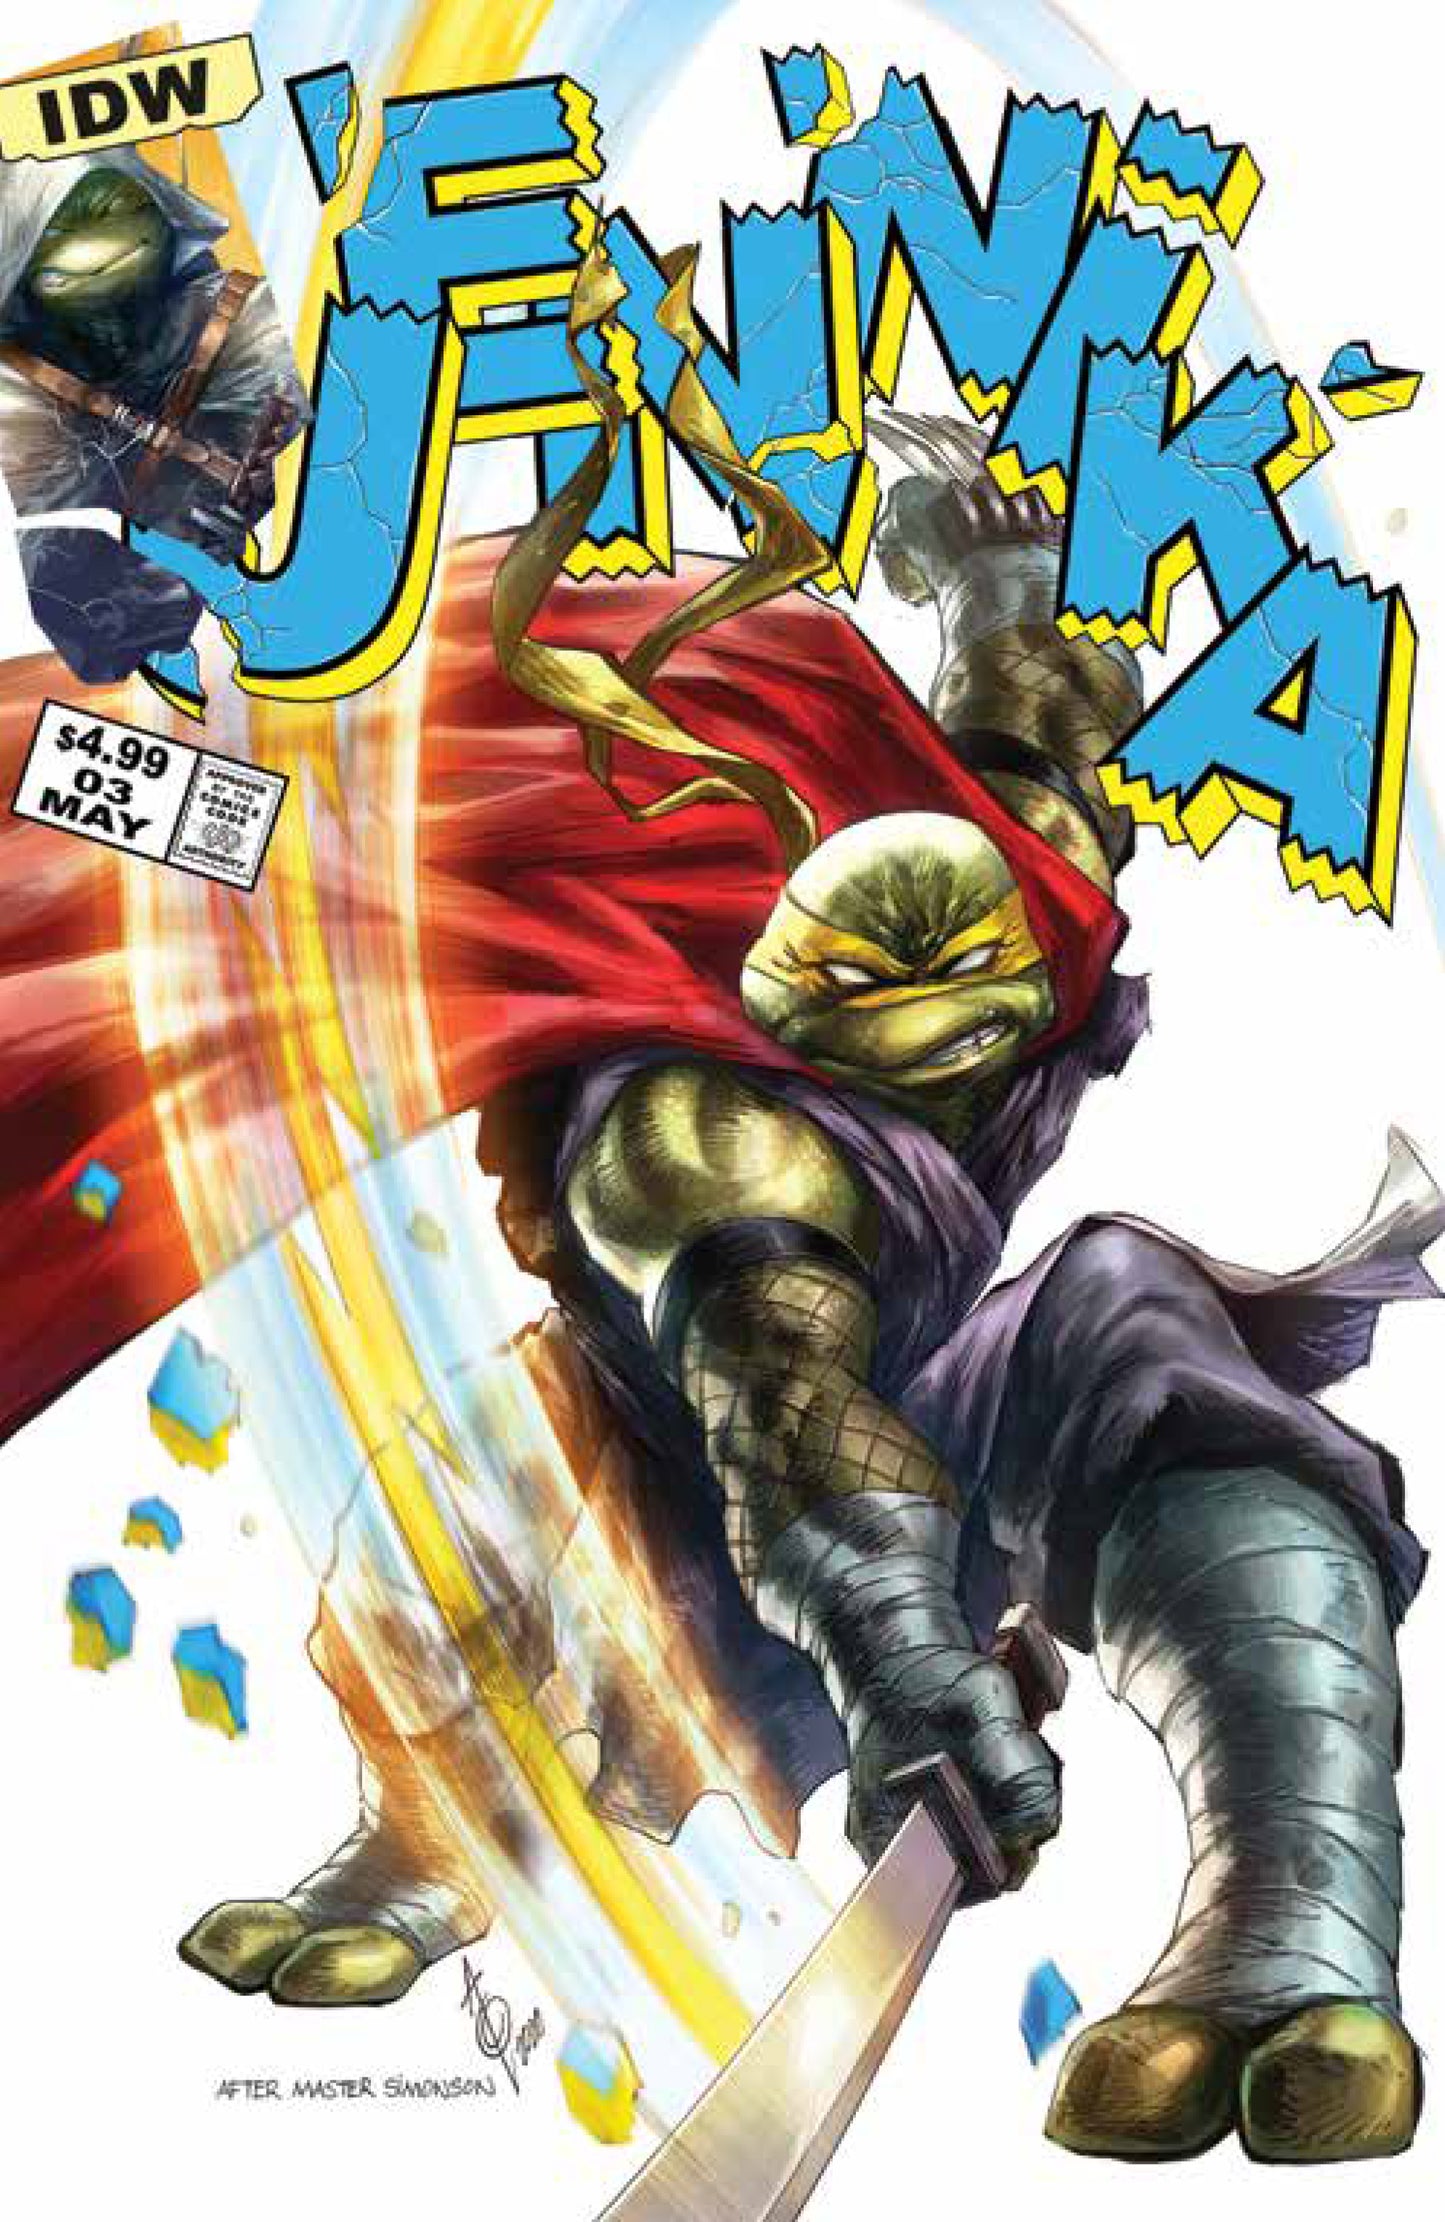 TMNT Jennika #3 (Of 3) Alan Quah Variant Mighty Thor 337 Homage Teenage Mutant Ninja Turtles (06/24/2020) IDW